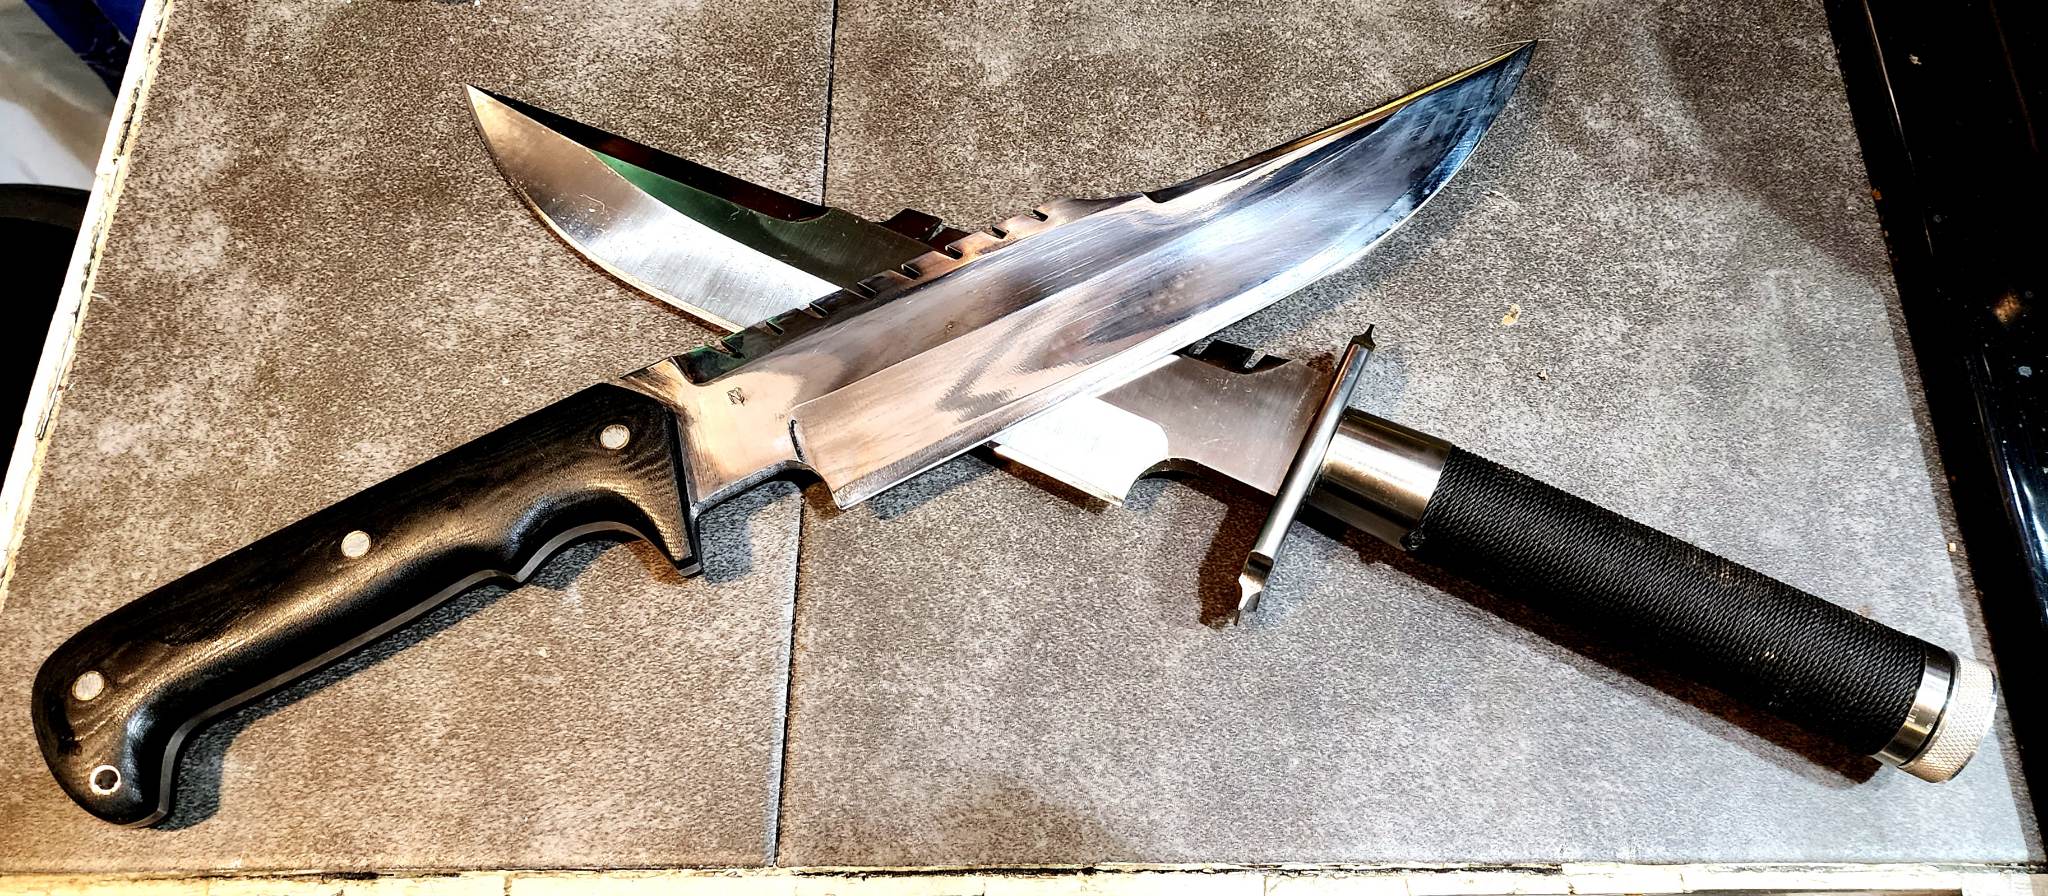 original vs custom replica of Commando knife